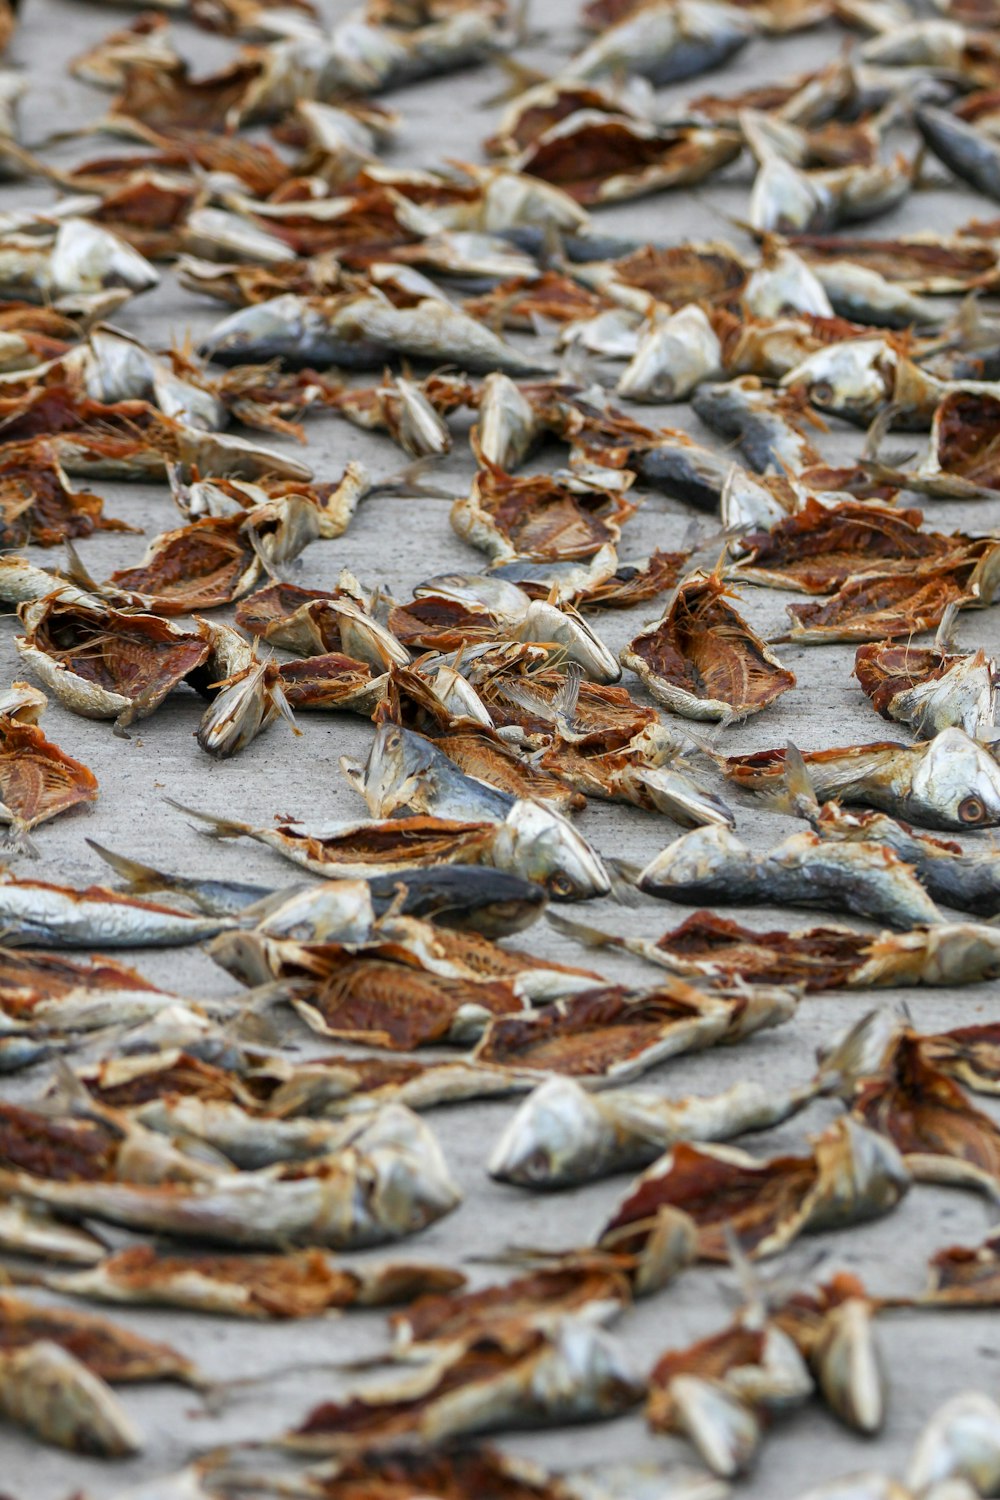 pesce essiccato su pavimentazione grigia